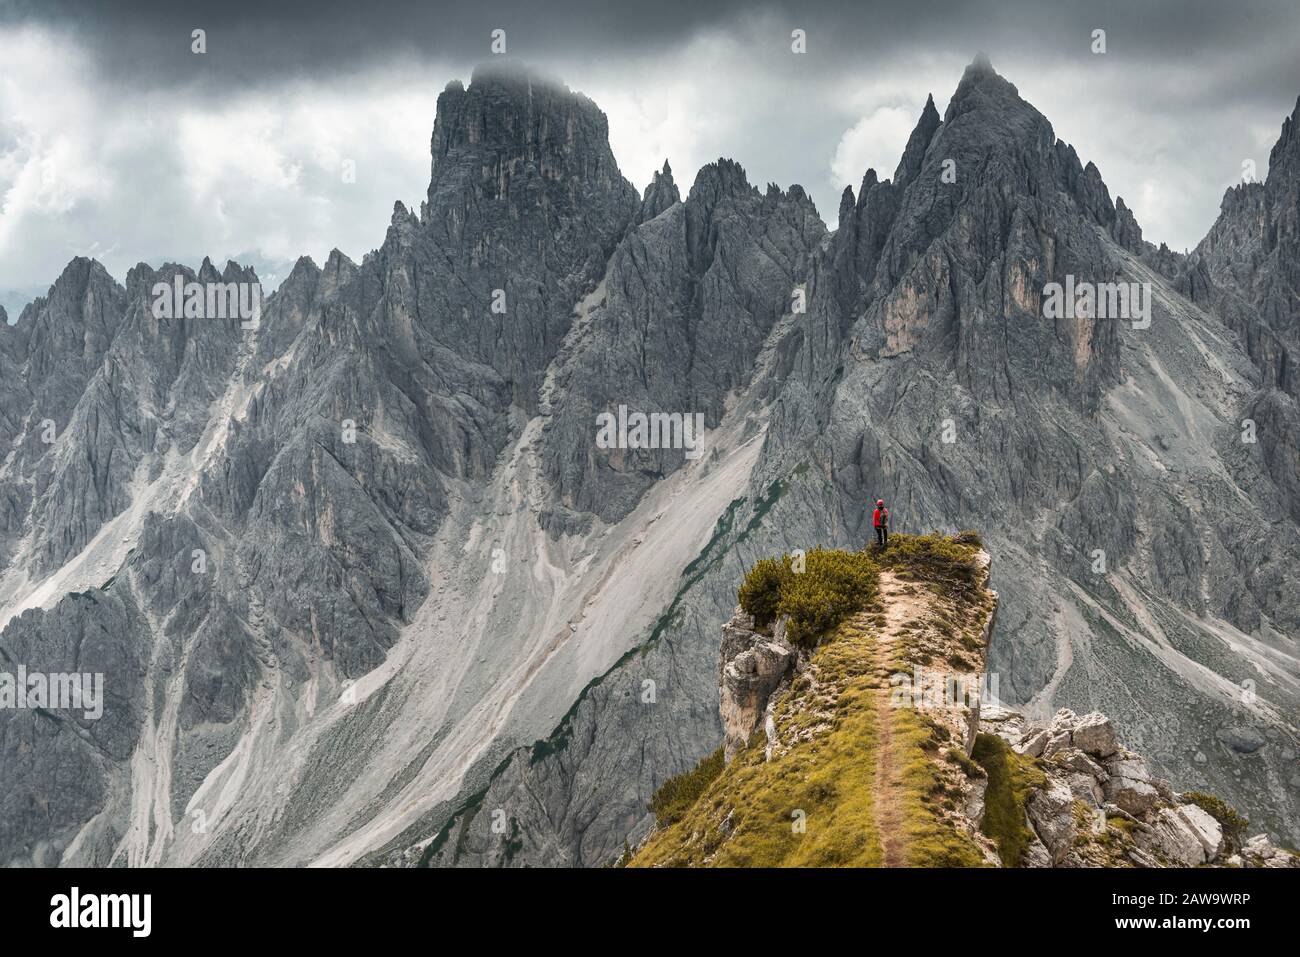 Homme avec veste rouge debout sur un degré, derrière lui des pics de montagne et des roches pointues, des nuages dramatiques, Cimon le groupe Croda Liscia et Cadini Banque D'Images